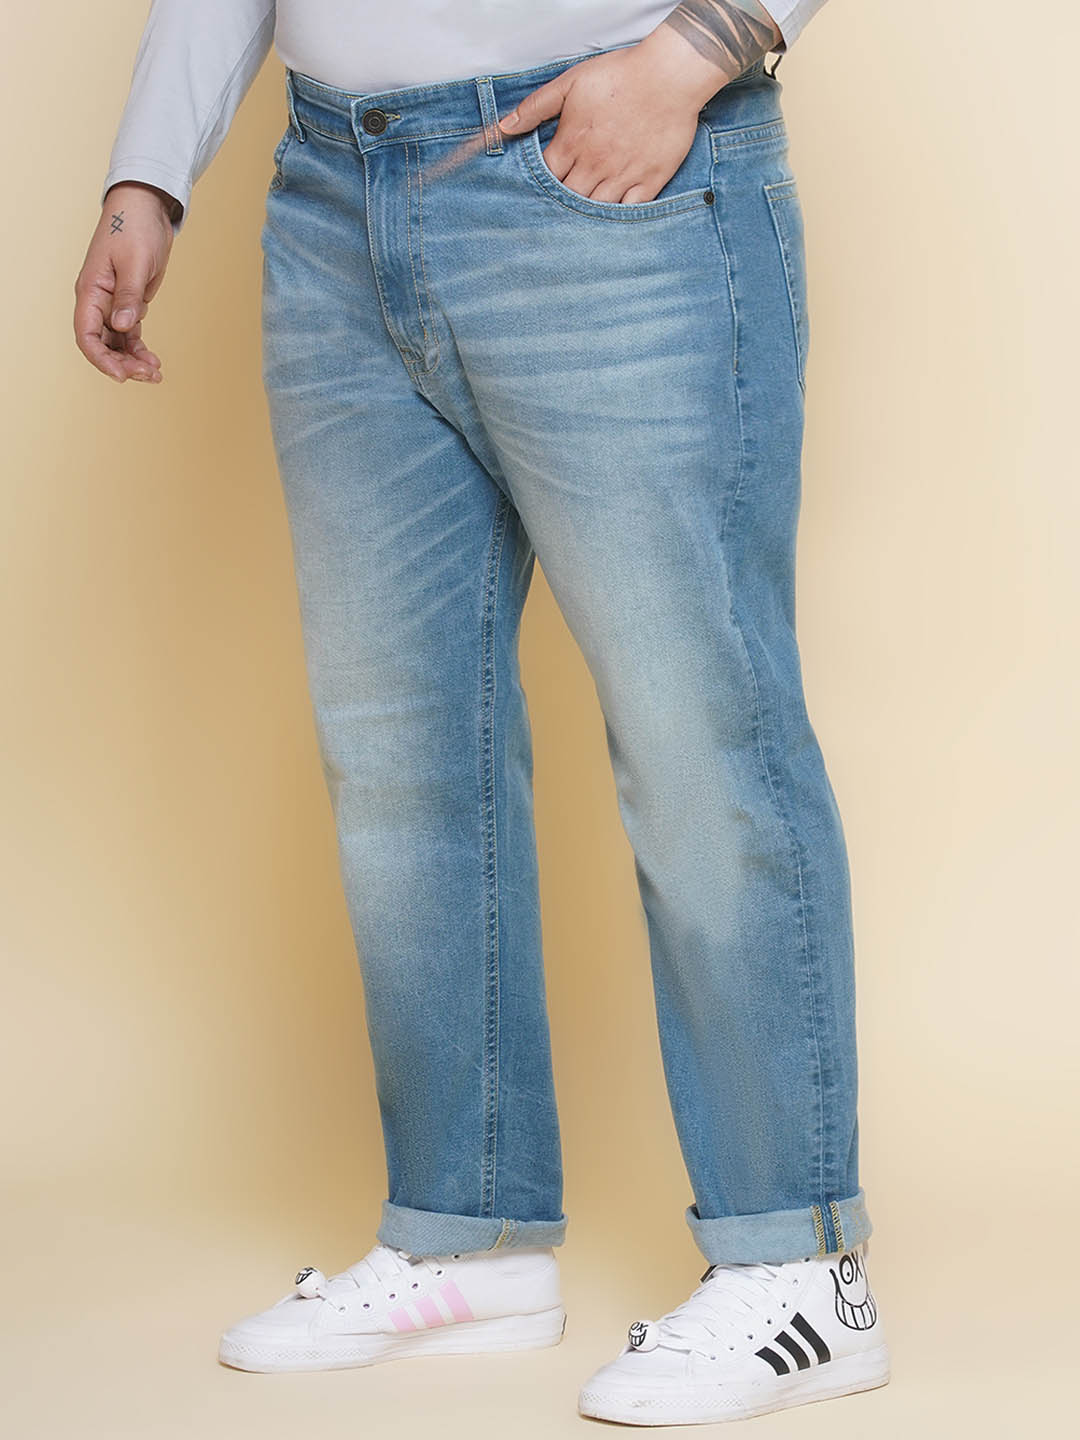 bottomwear/jeans/JPJ12392/jpj12392-3.jpg